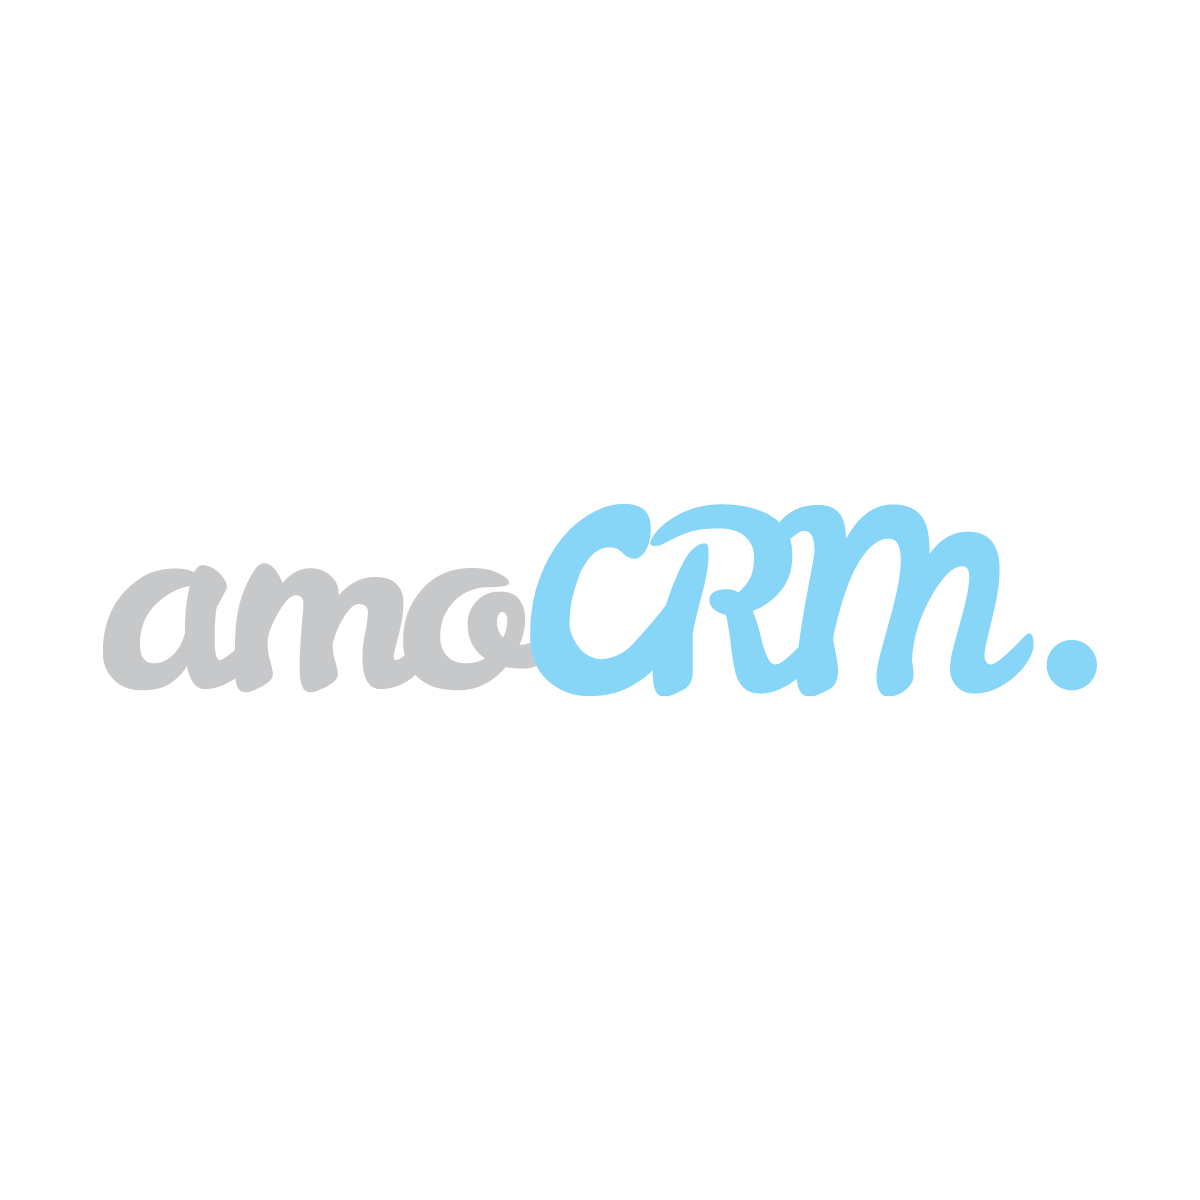  Best Cloud CRM Solution Logo: amoCRM